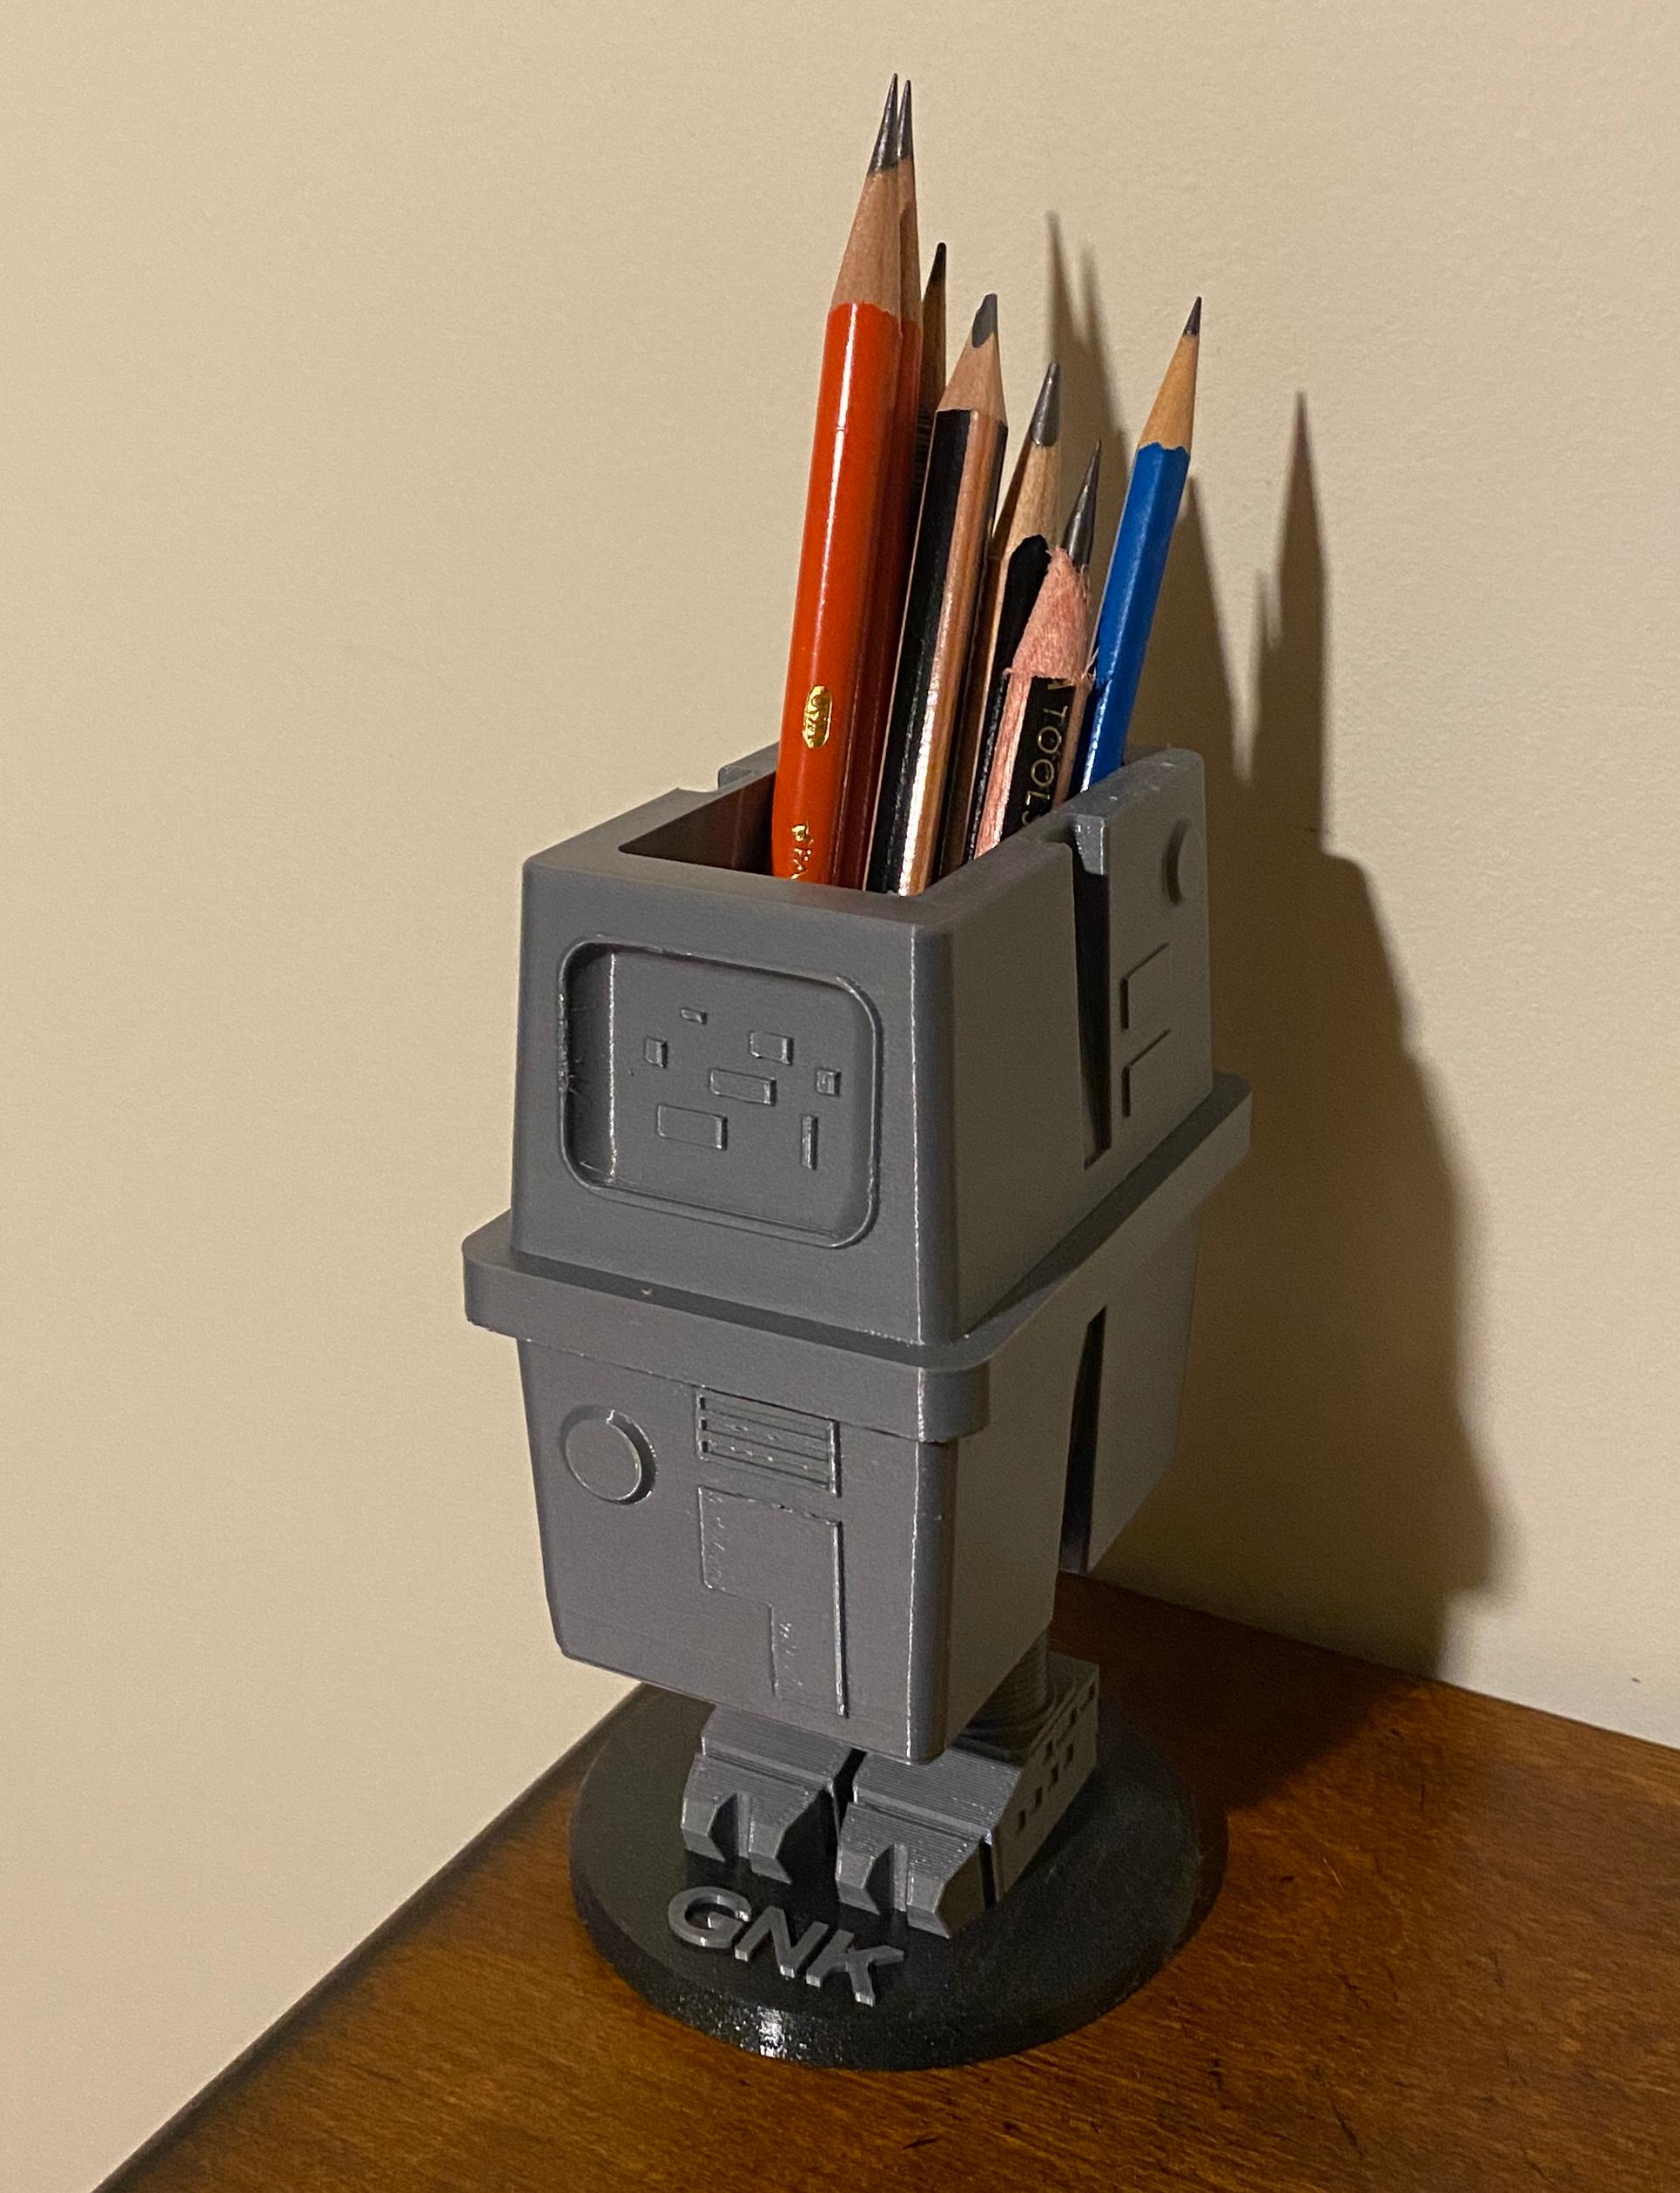 GNK Droid Pencil Cup - Great model. Mouse droid next!  - 3d model